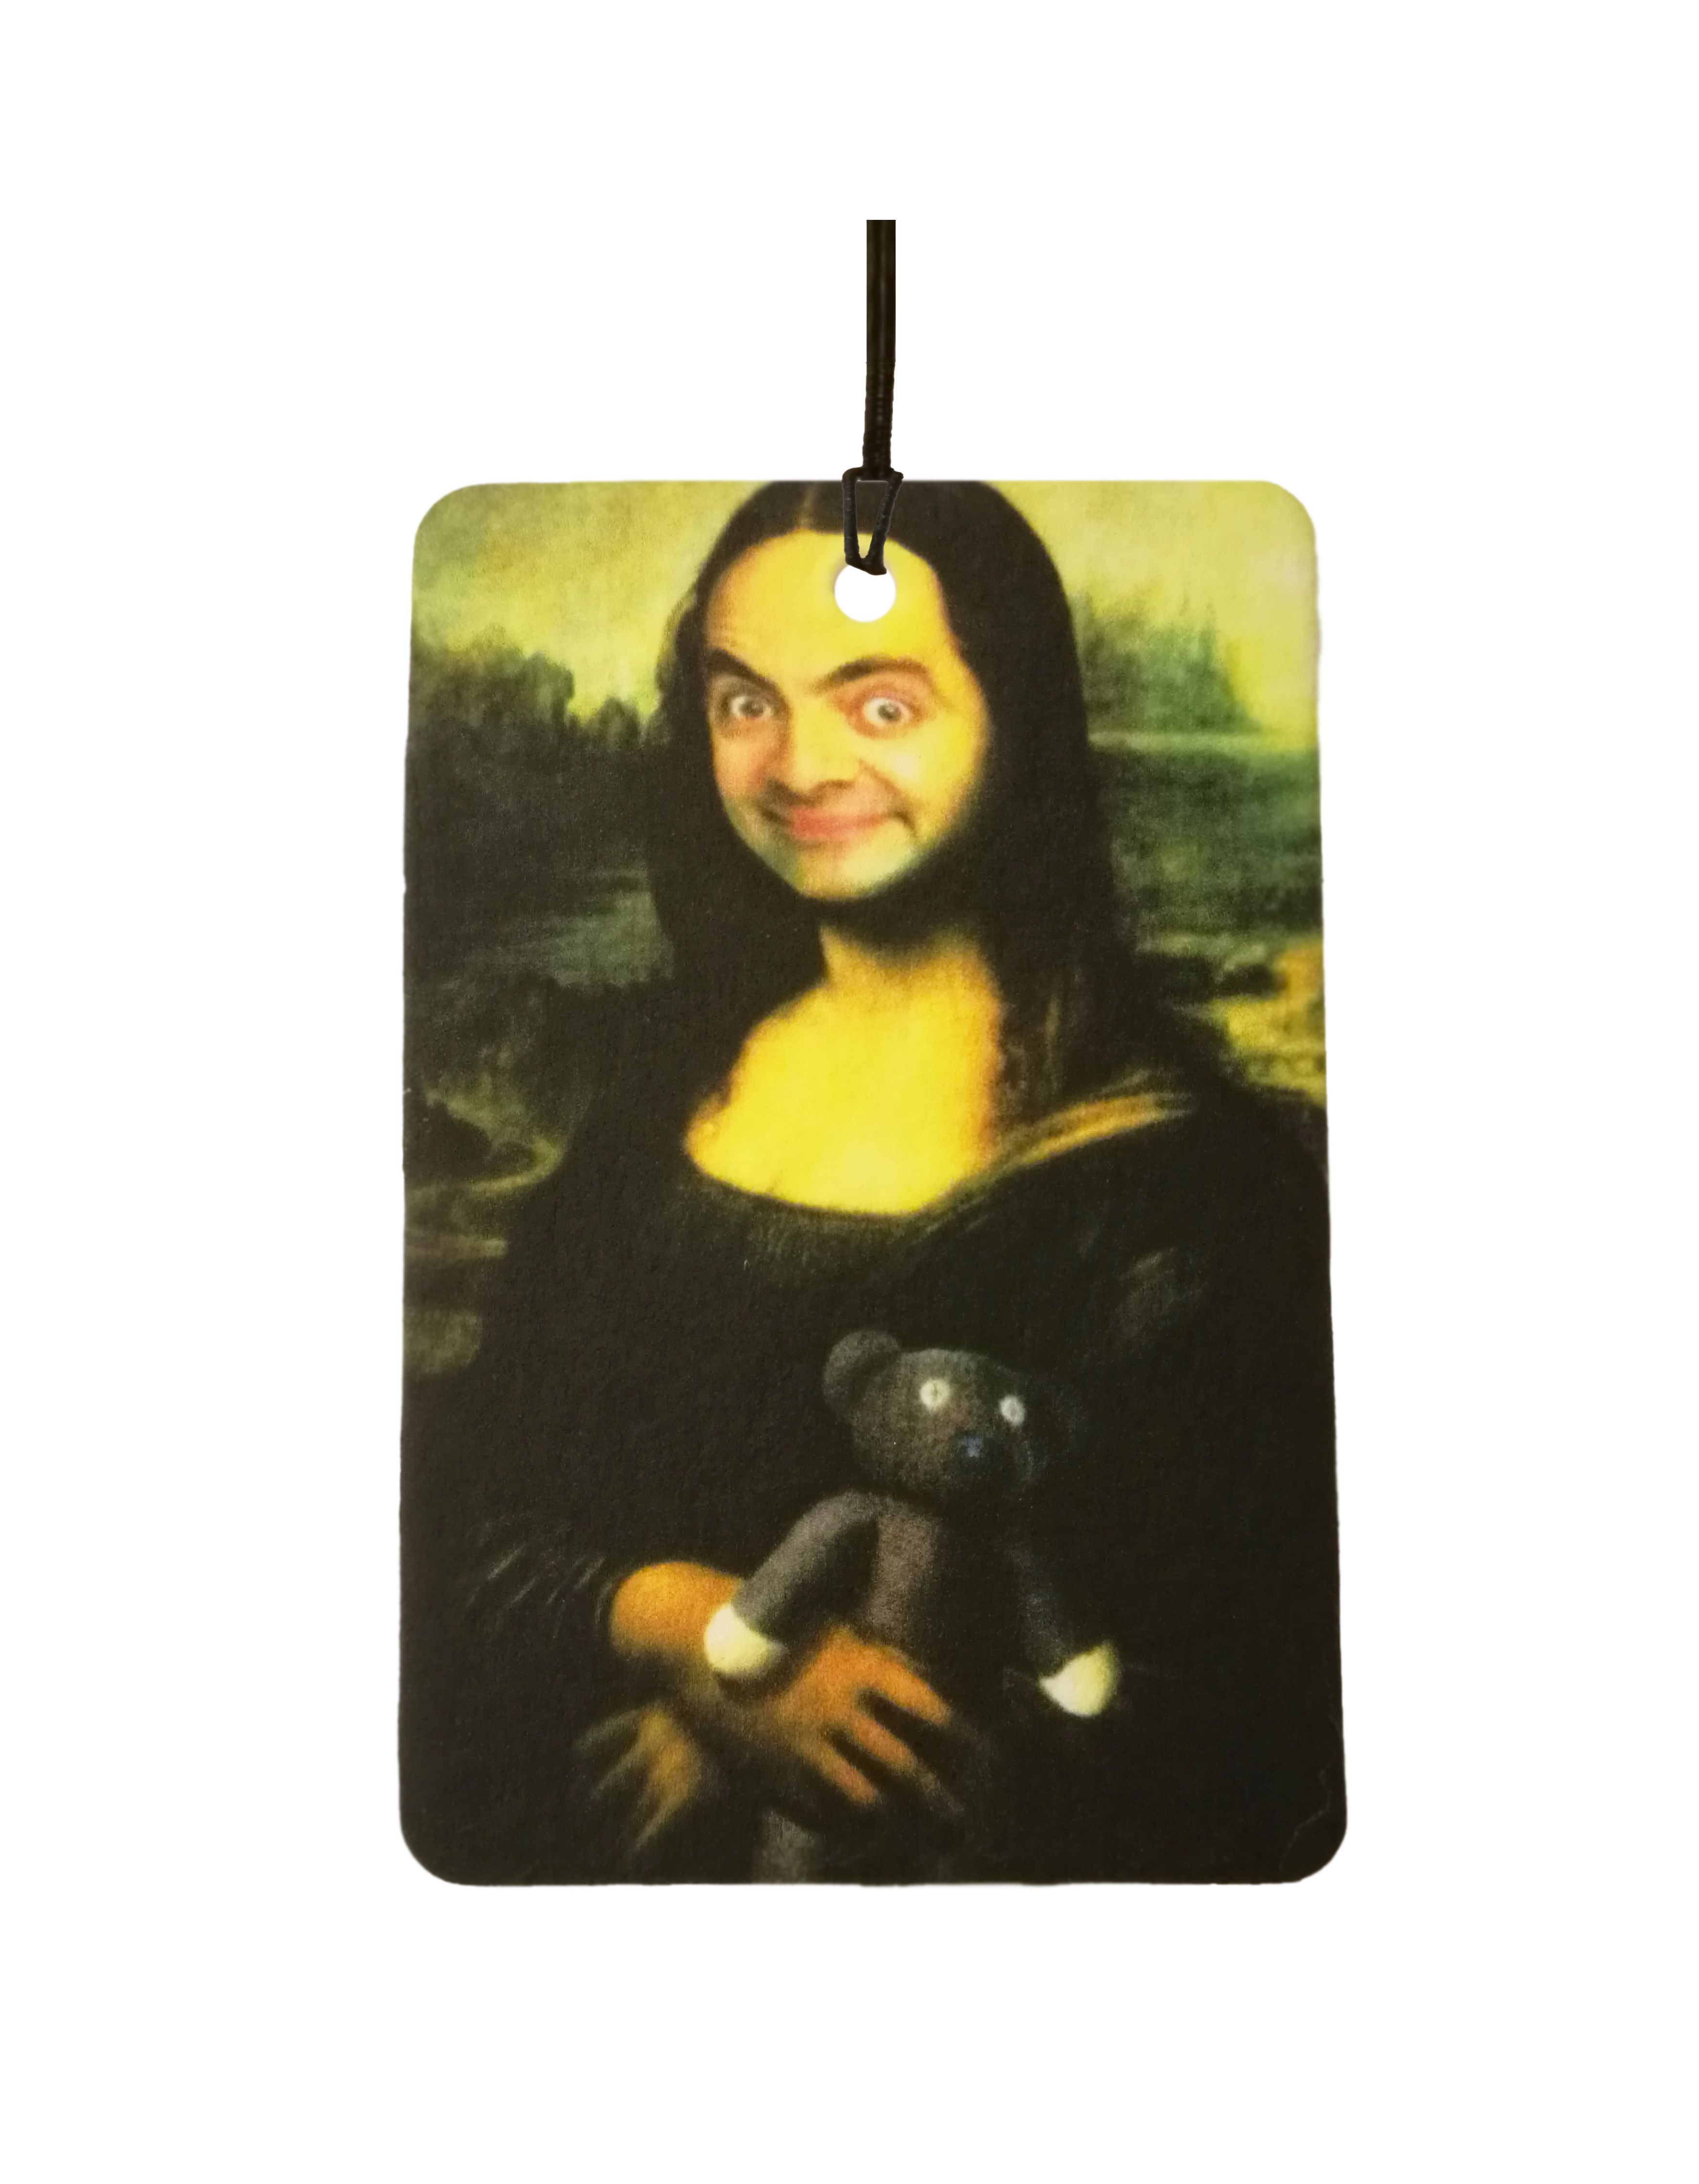 Bean Mona Lisa